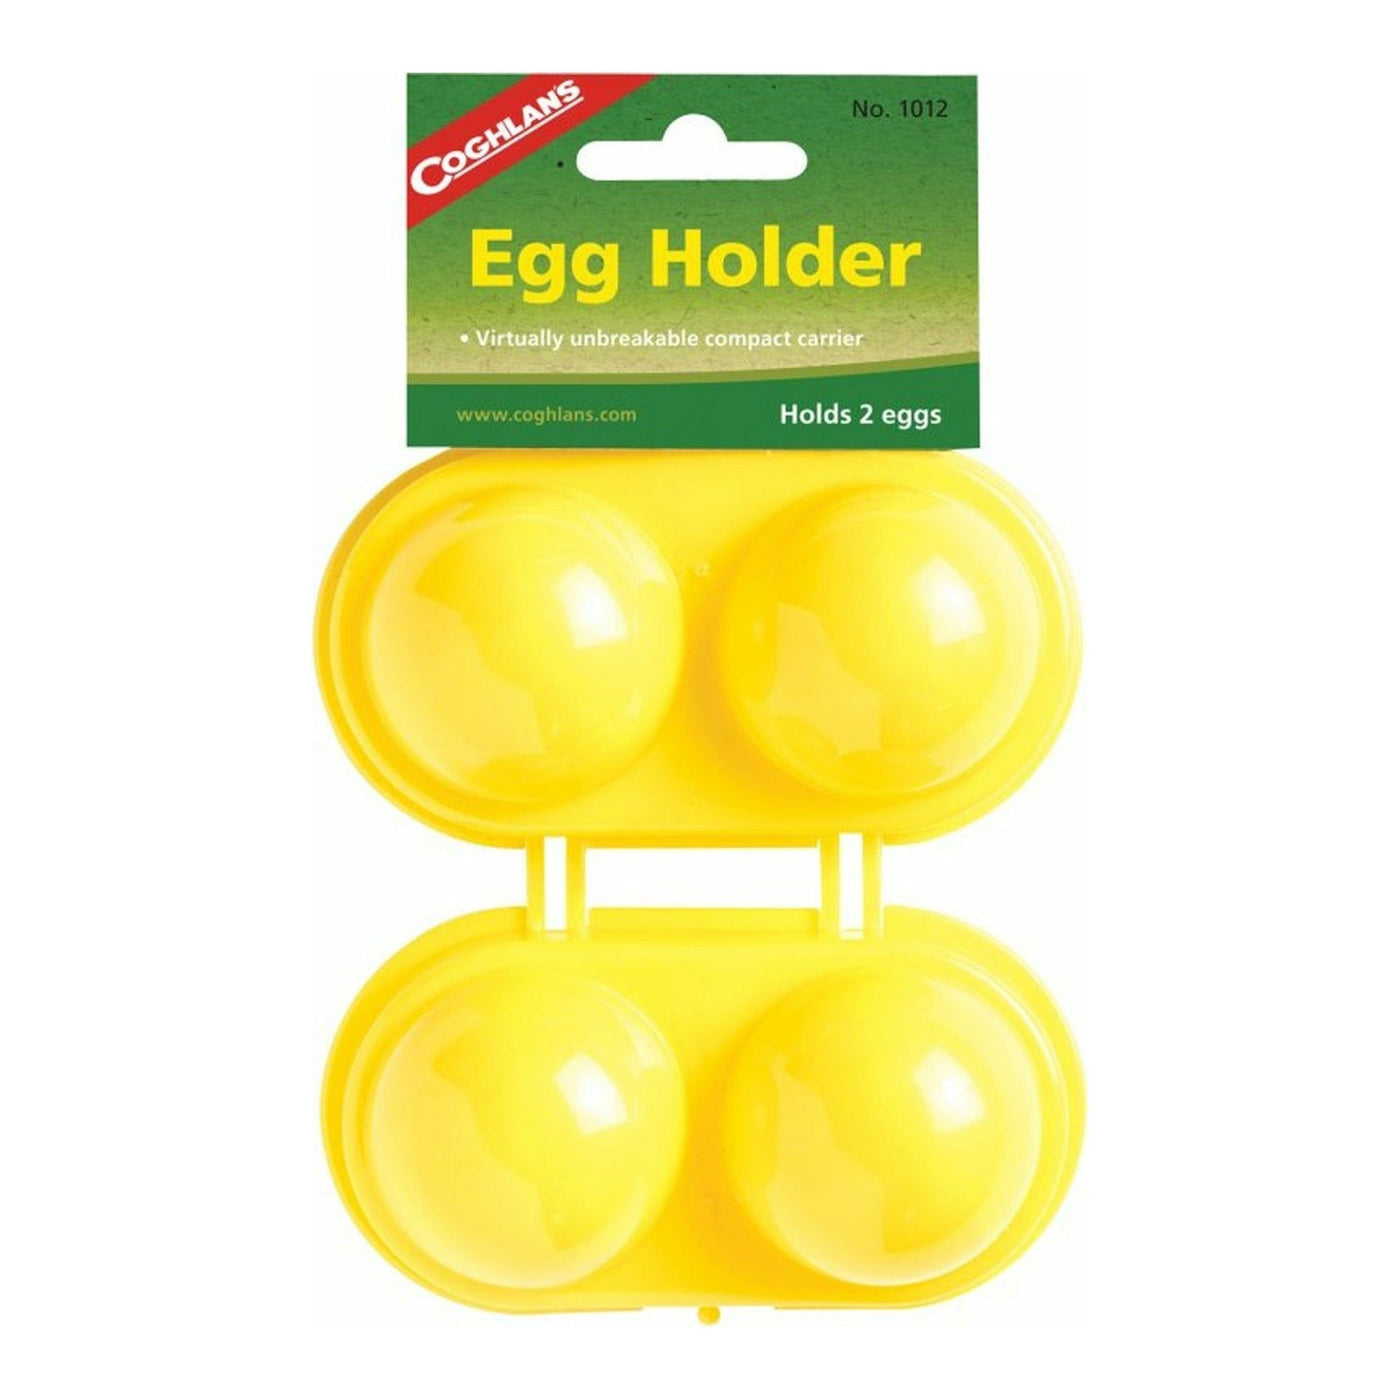 Egg Holder (2 eggs)